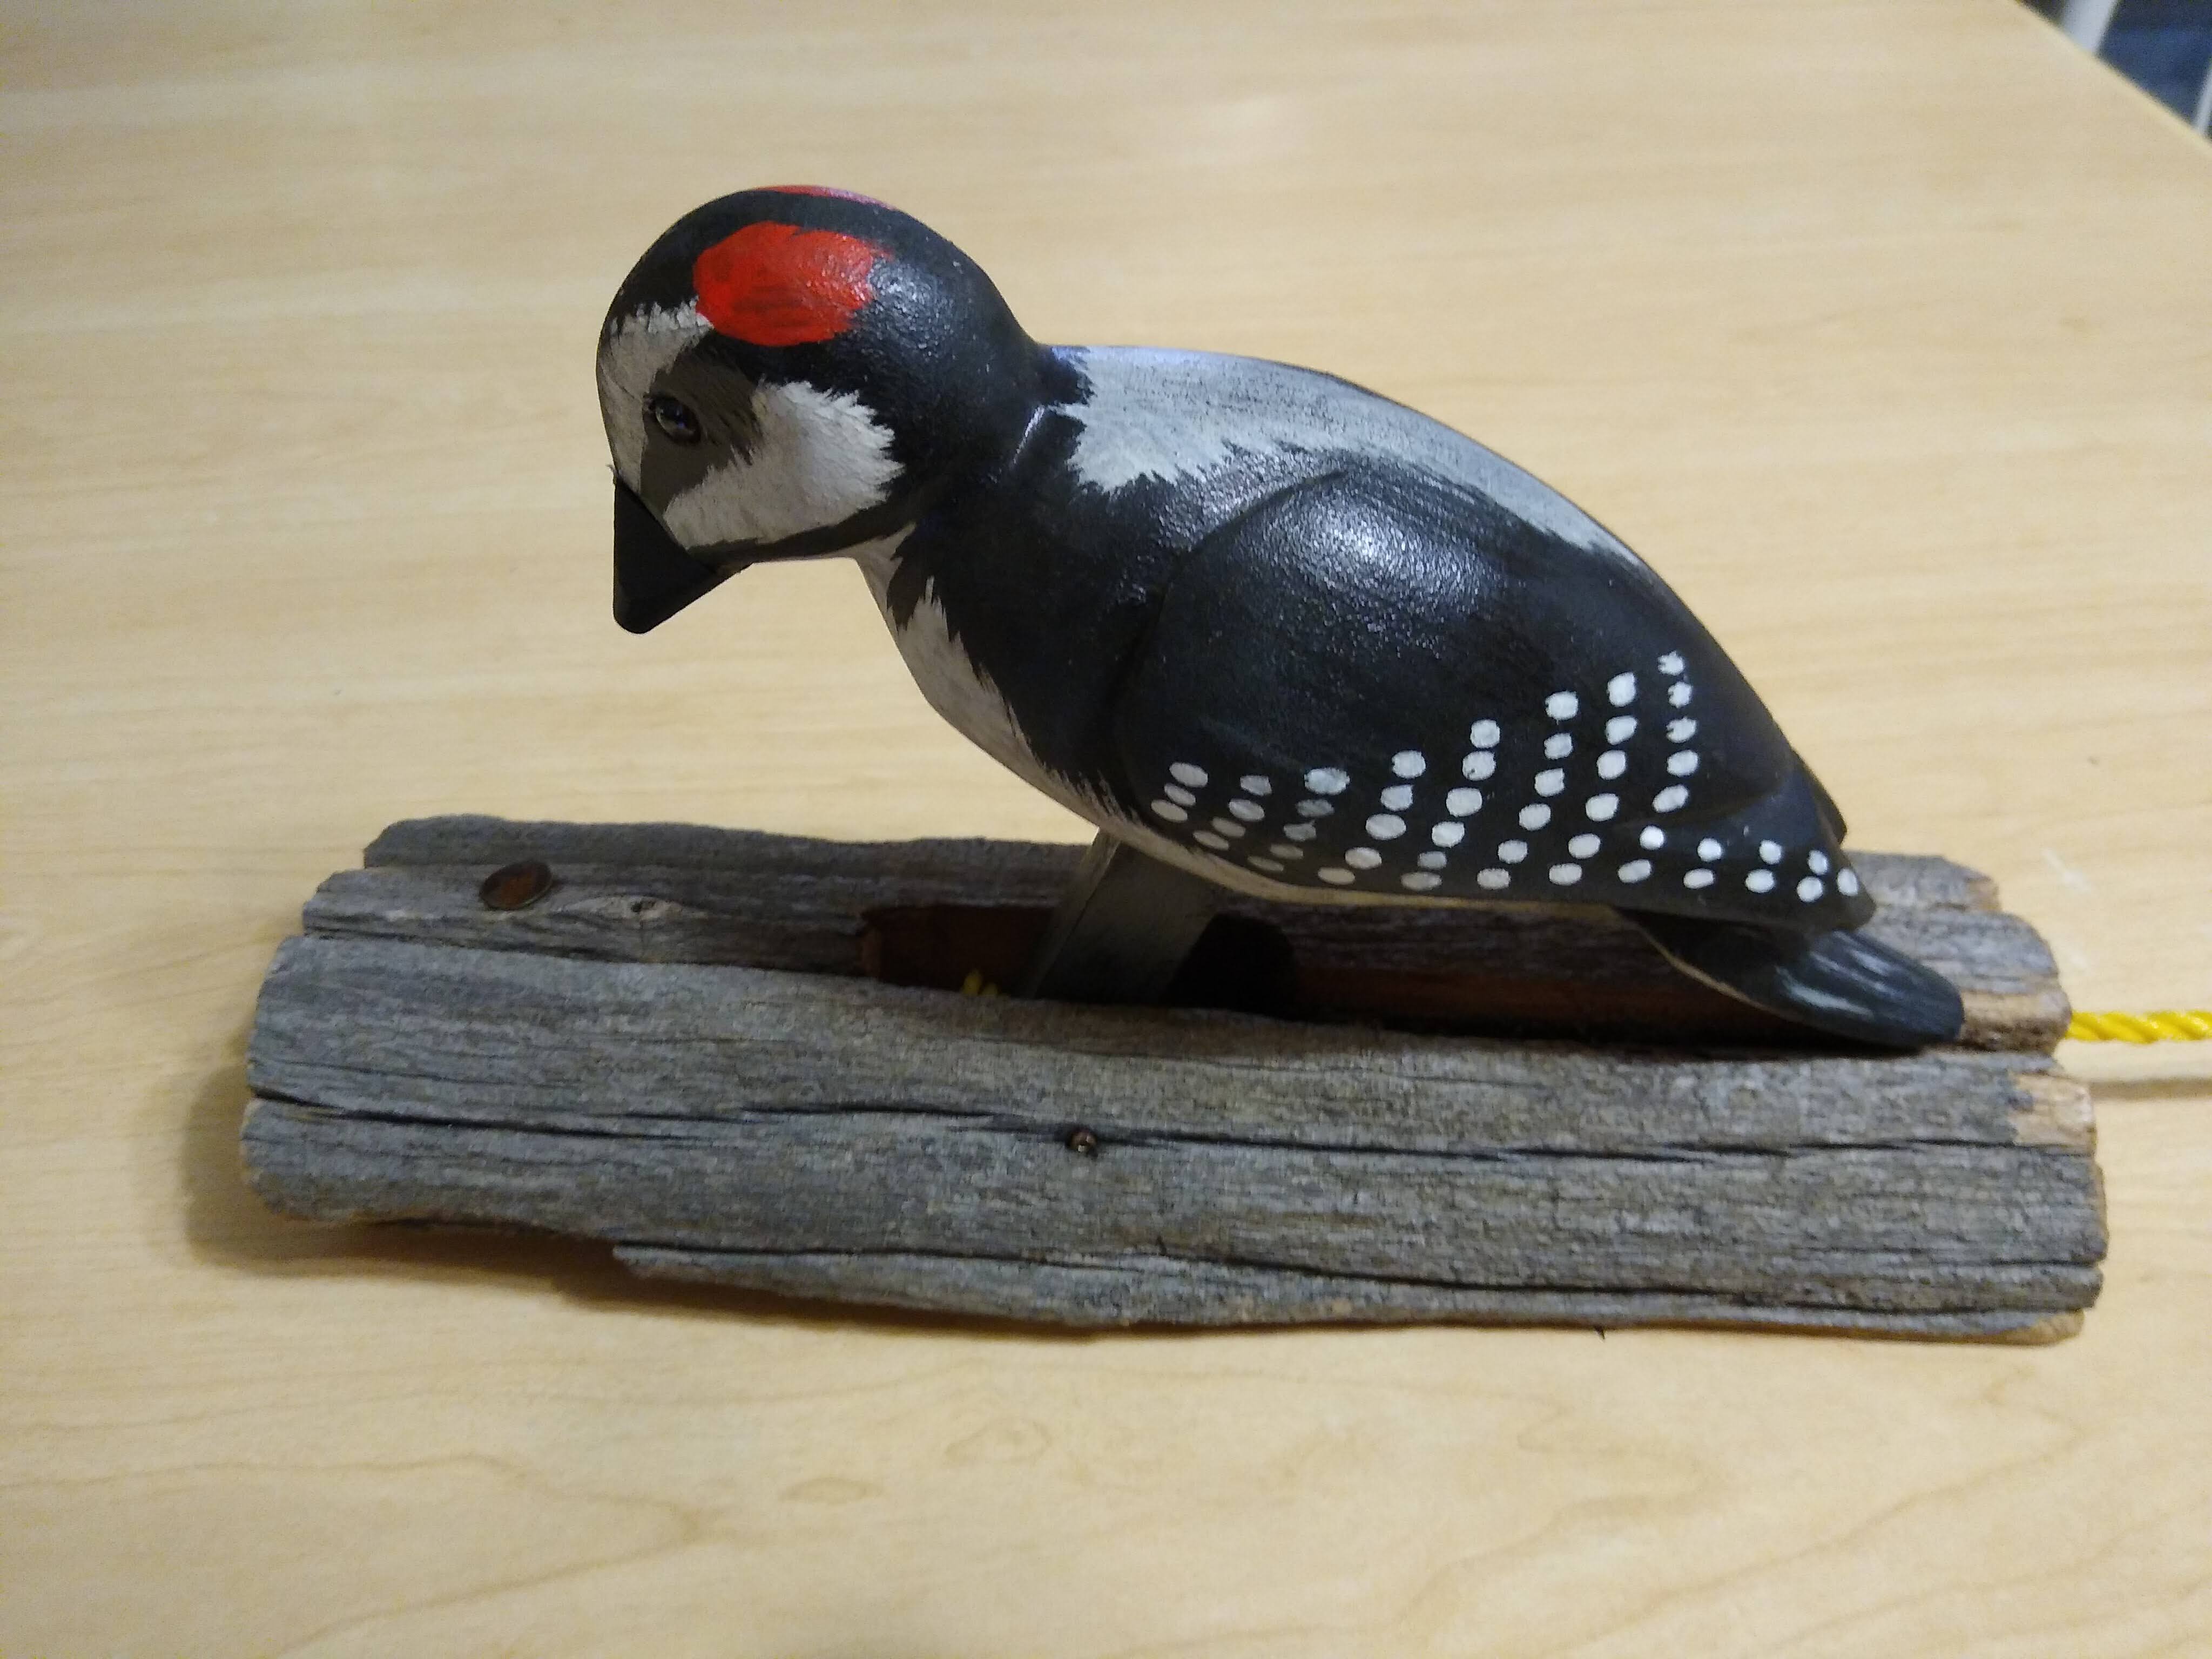 Woodpecker beak